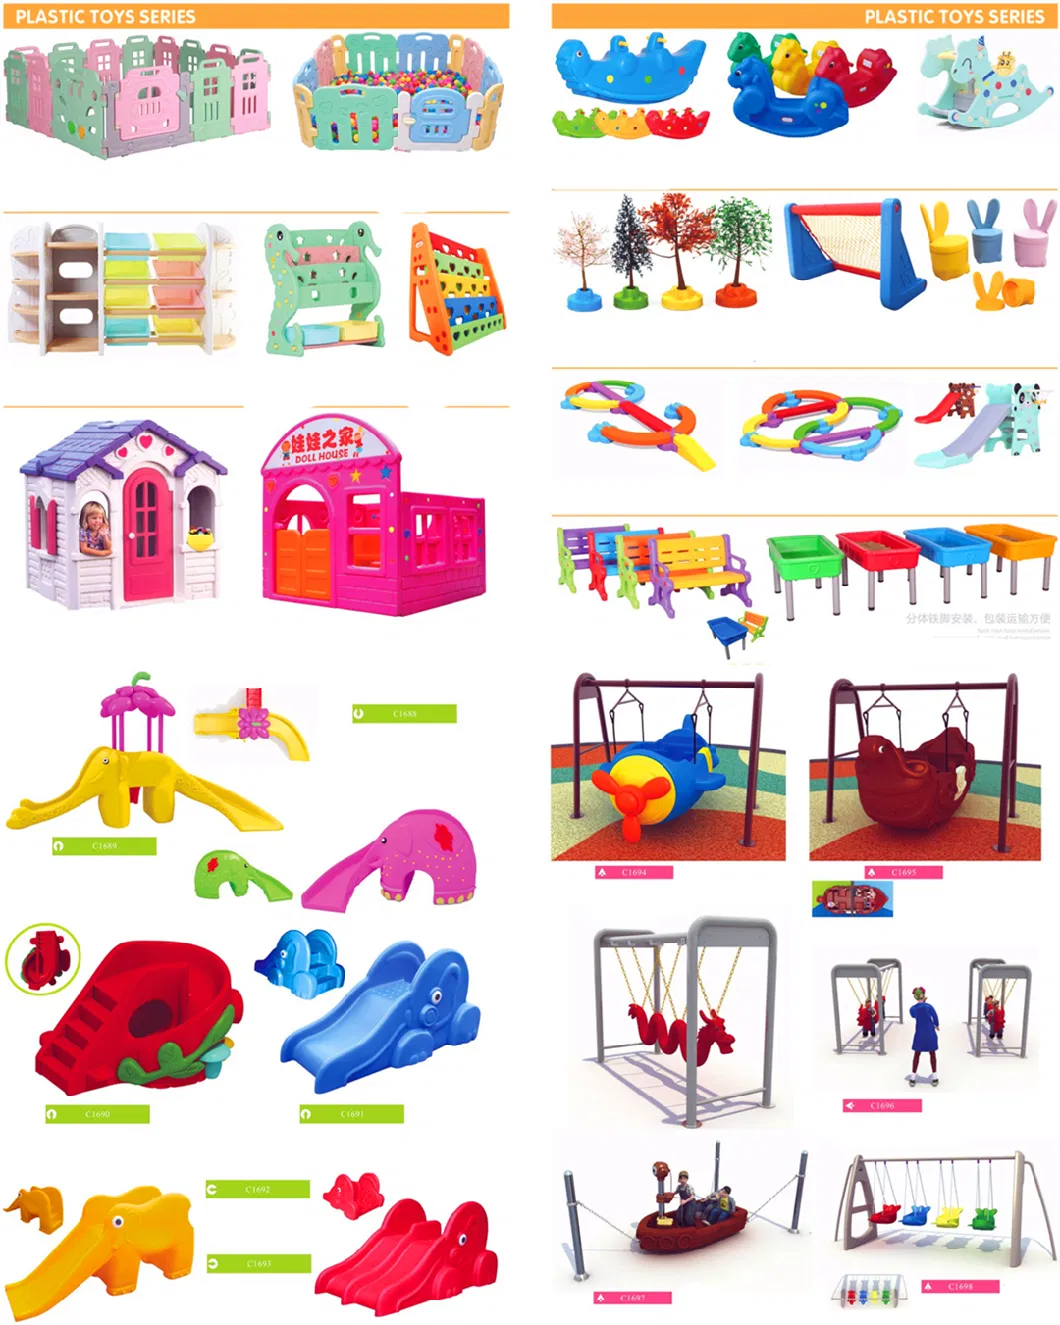 Kindergarten Kids Outdoor Plastic Slide Equipment Amusement Park Toys 519b